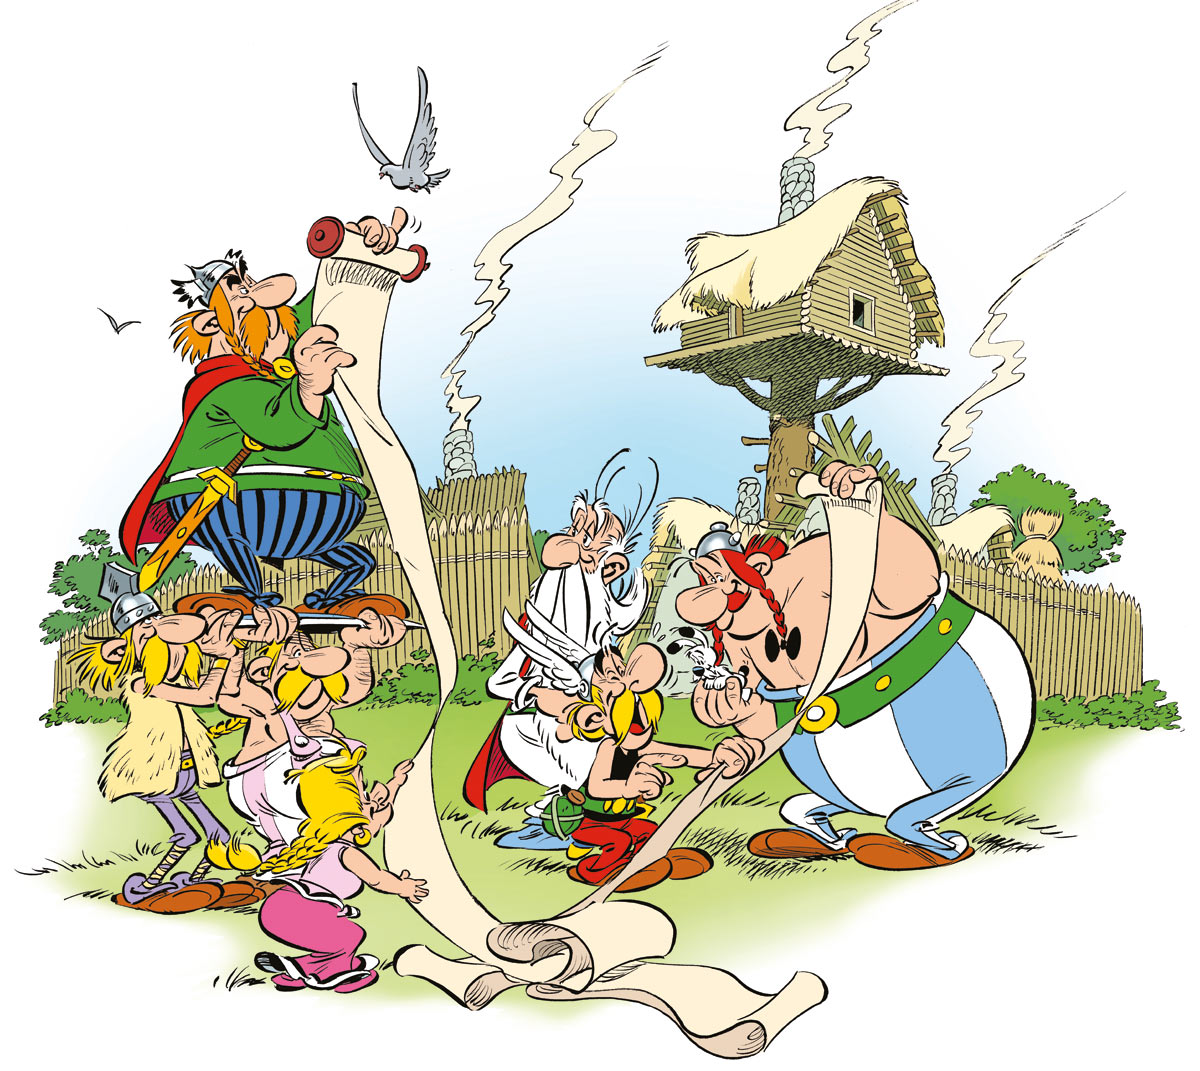 Qual o povo de Asterix?